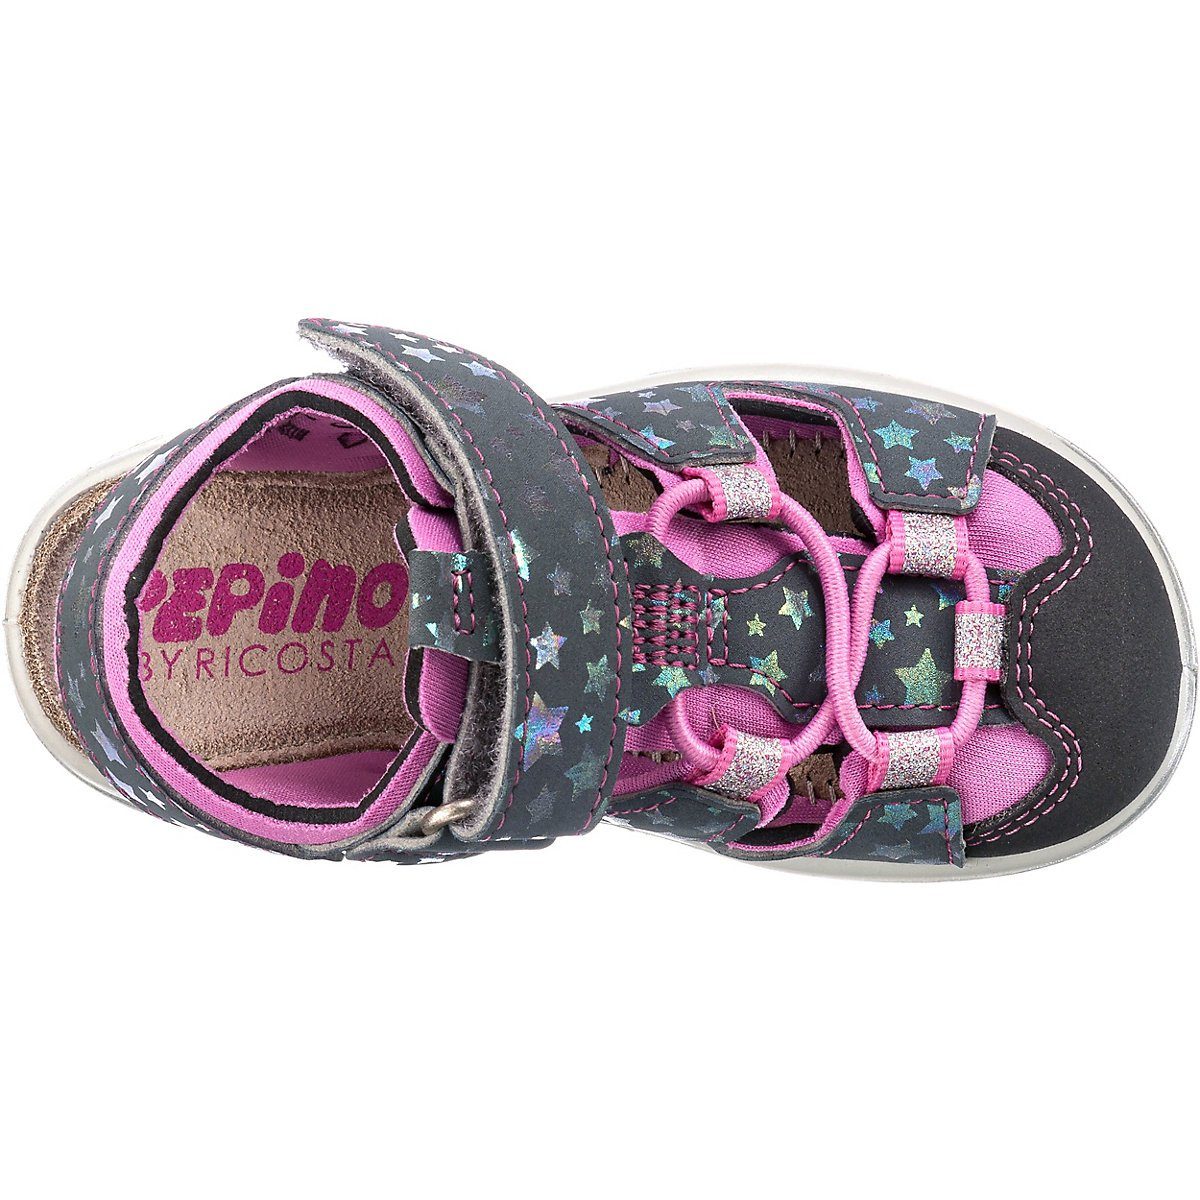 Schuhe Babyschuhe Mädchen PEPINO by RICOSTA Baby Sandalen für Mädchen Sandale